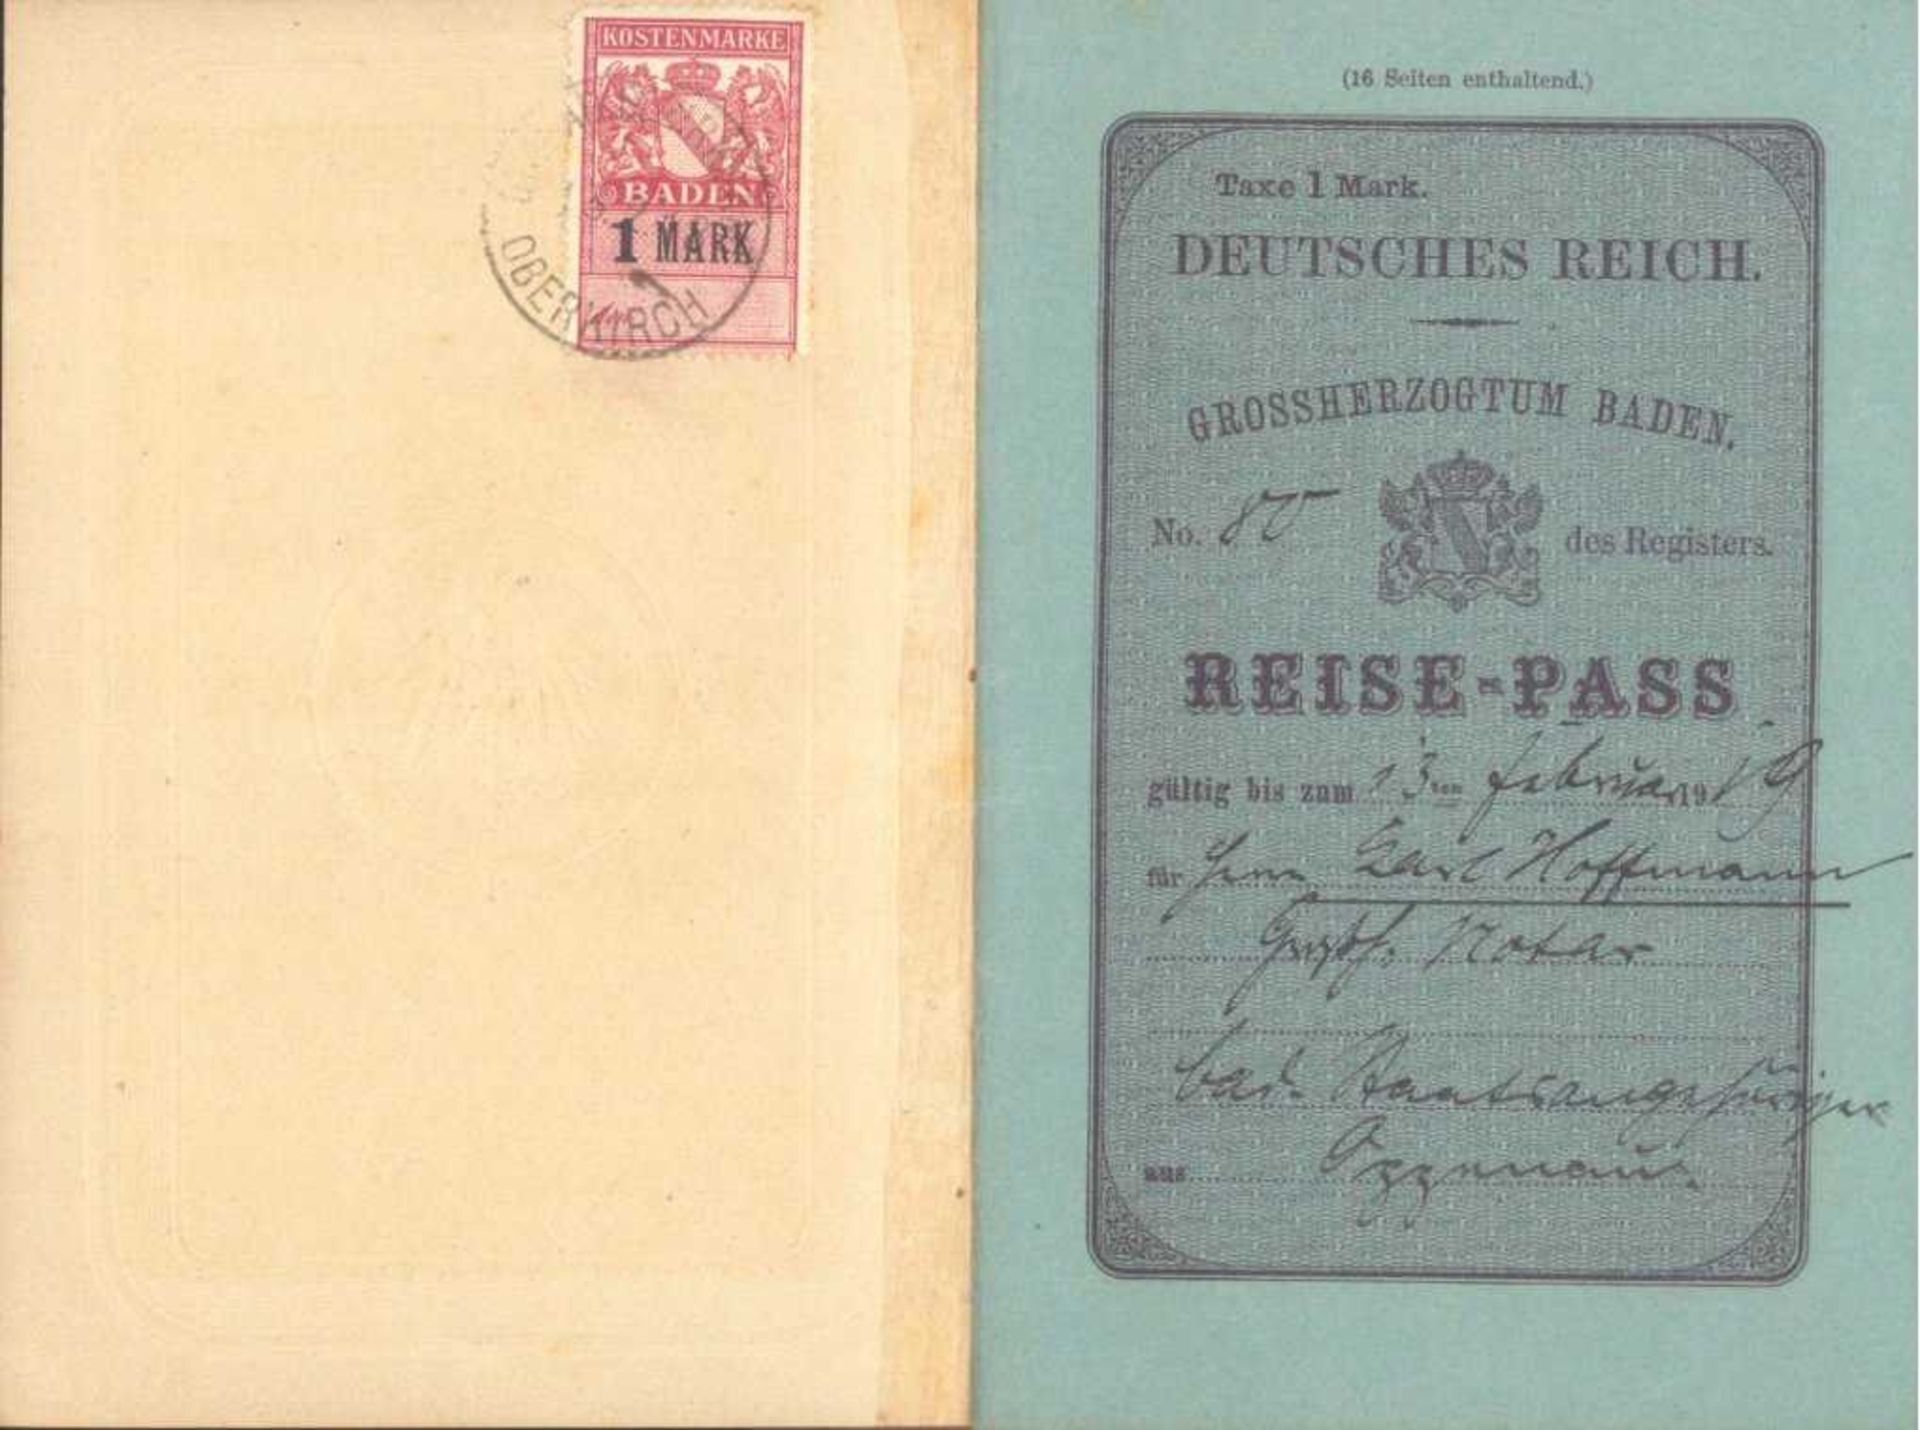 1919 GROSSHERZOGTHUM BADEN; Reise-Pass, OPPENAUReise-Pass des Deutschen Reiches, Inhaber der Notar